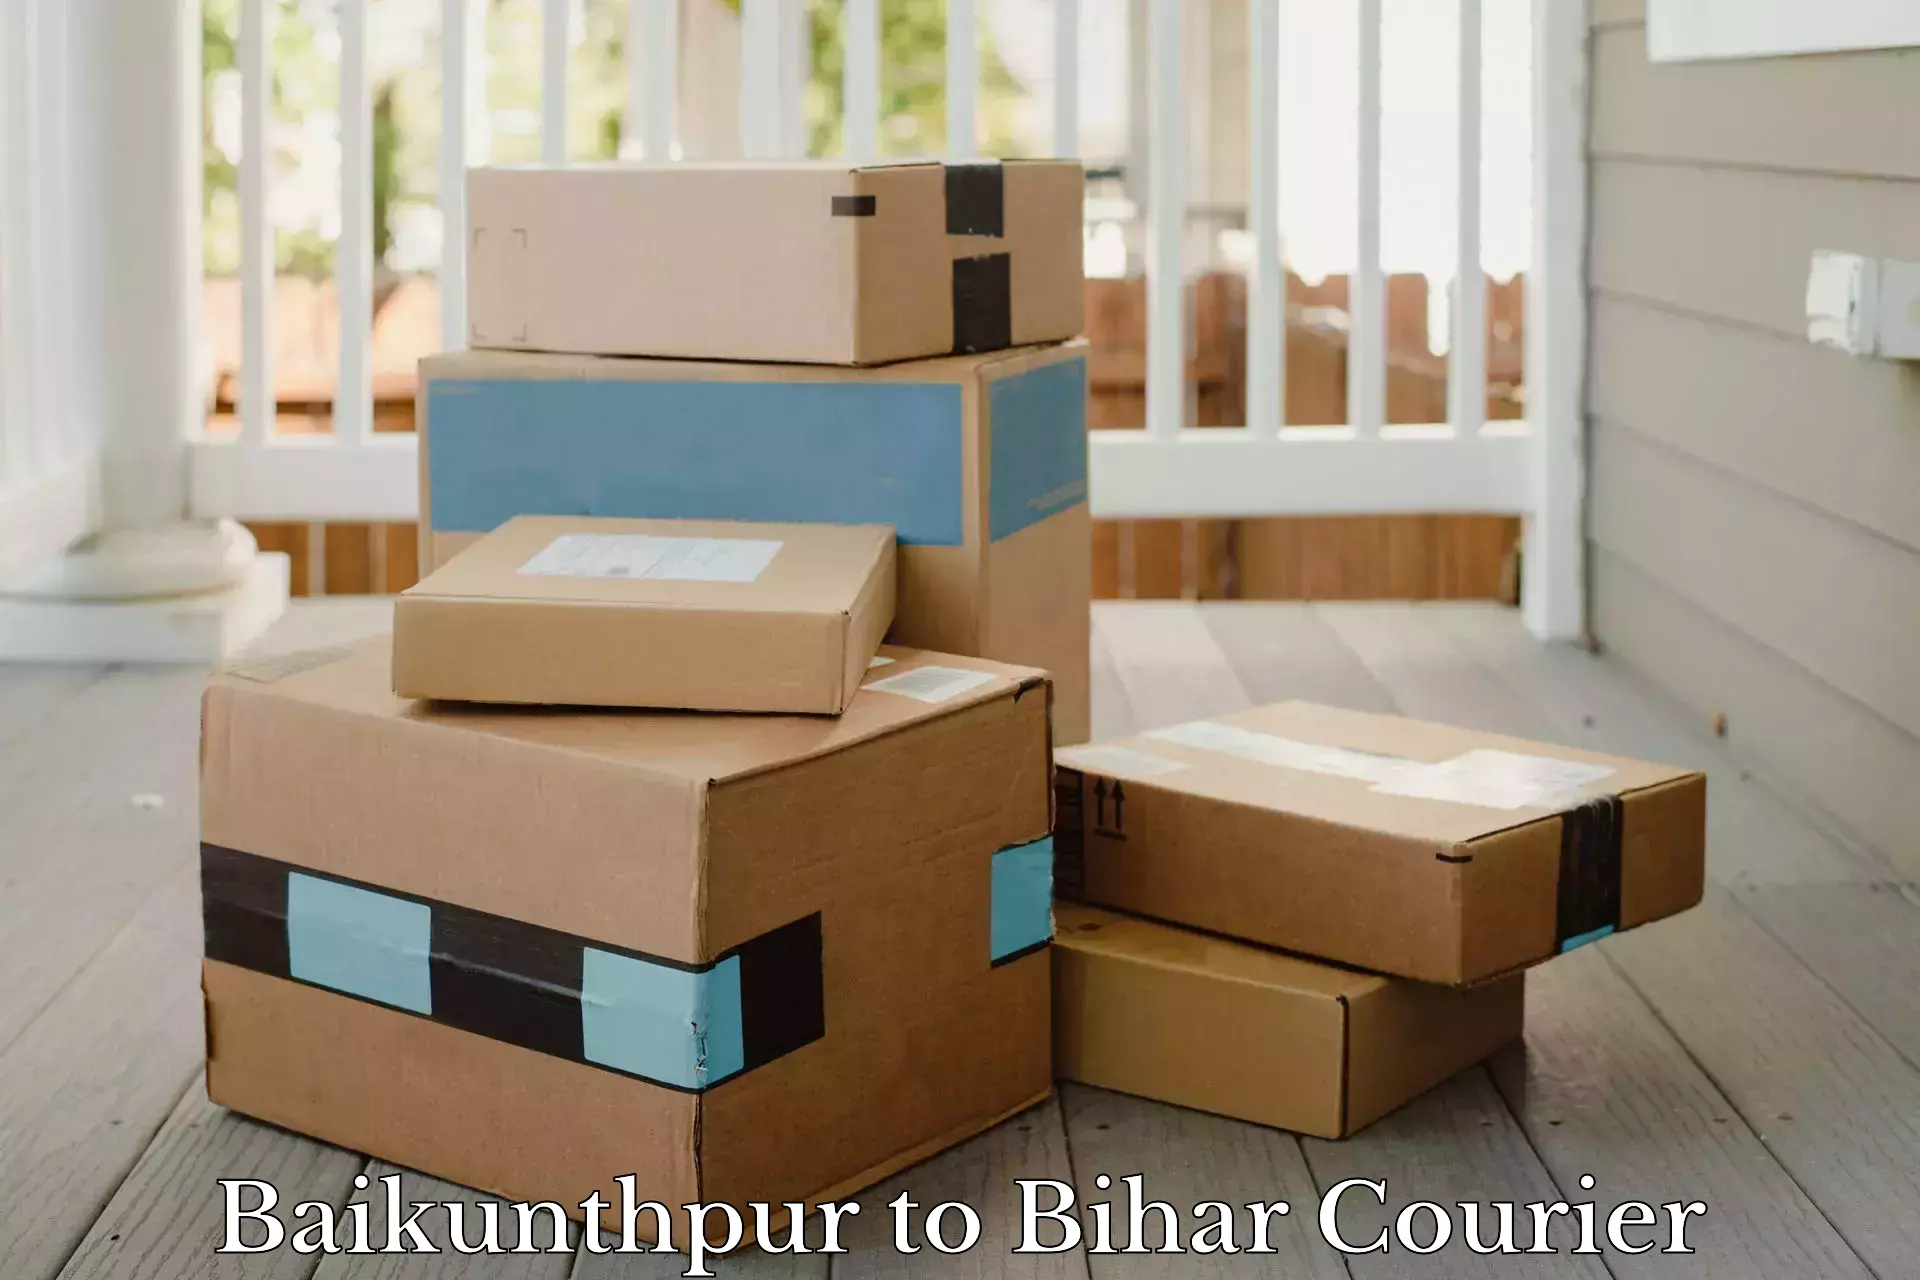 Next-generation courier services Baikunthpur to Bihar